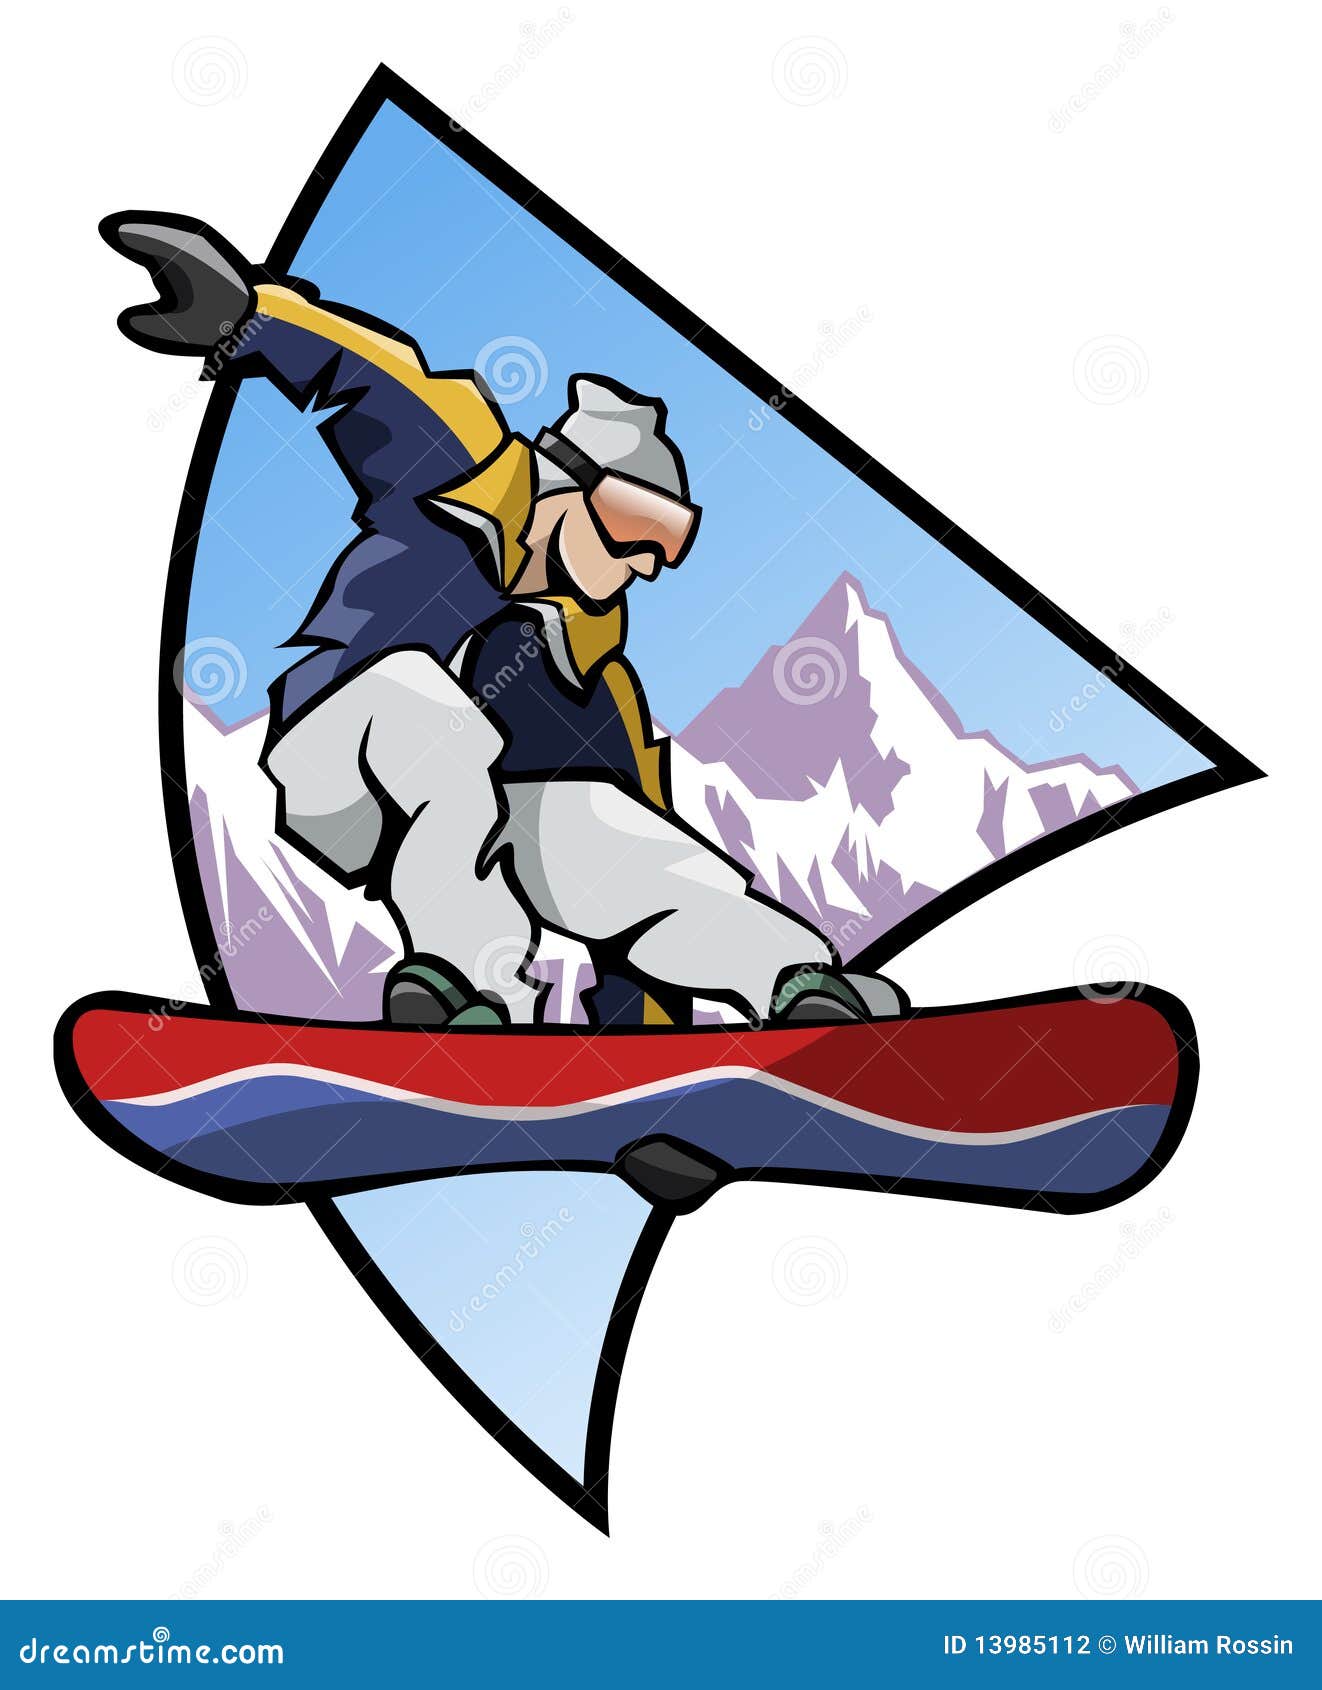 Barwi loga snowboard. Tło komputer wytwarzał ilustracyjnego skokowego loga halnego snowboarder styl